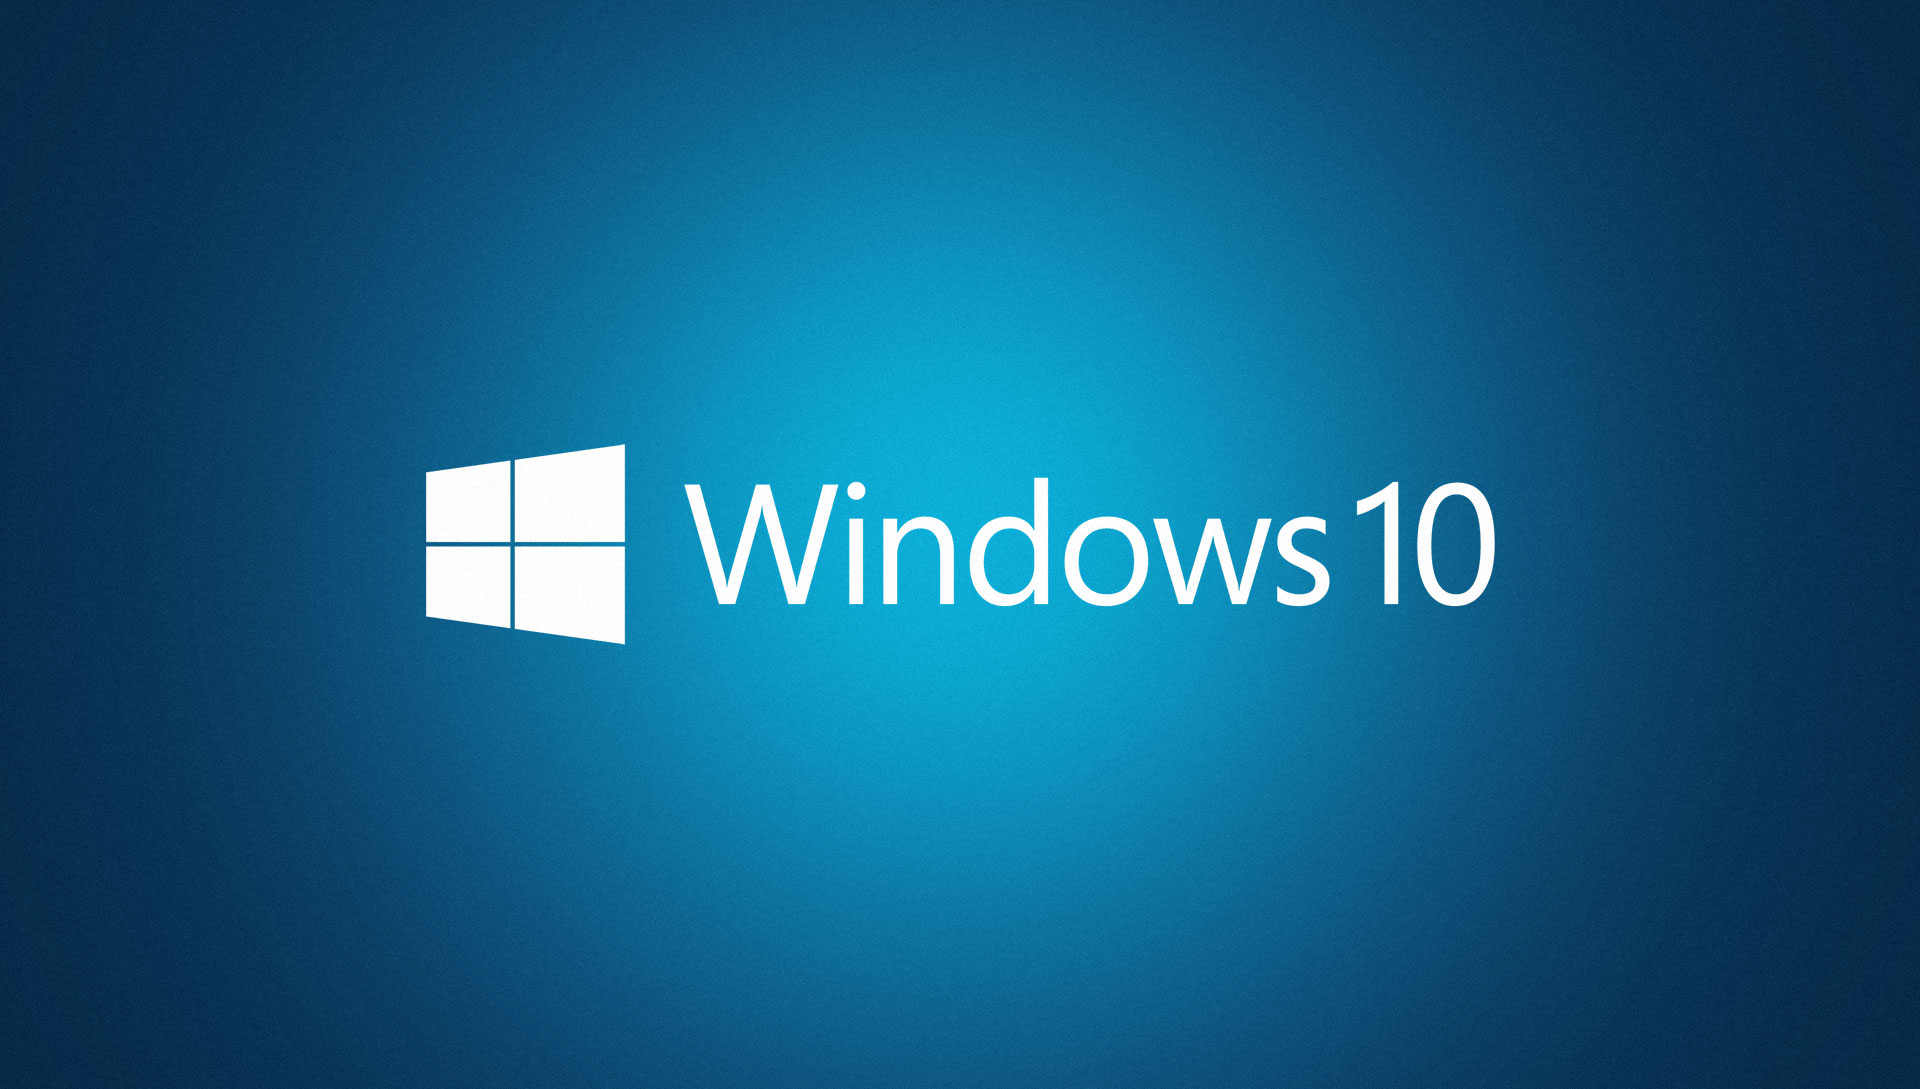 Windows 10: Kein Gratis-Upgrade für Enterprise-Kunden